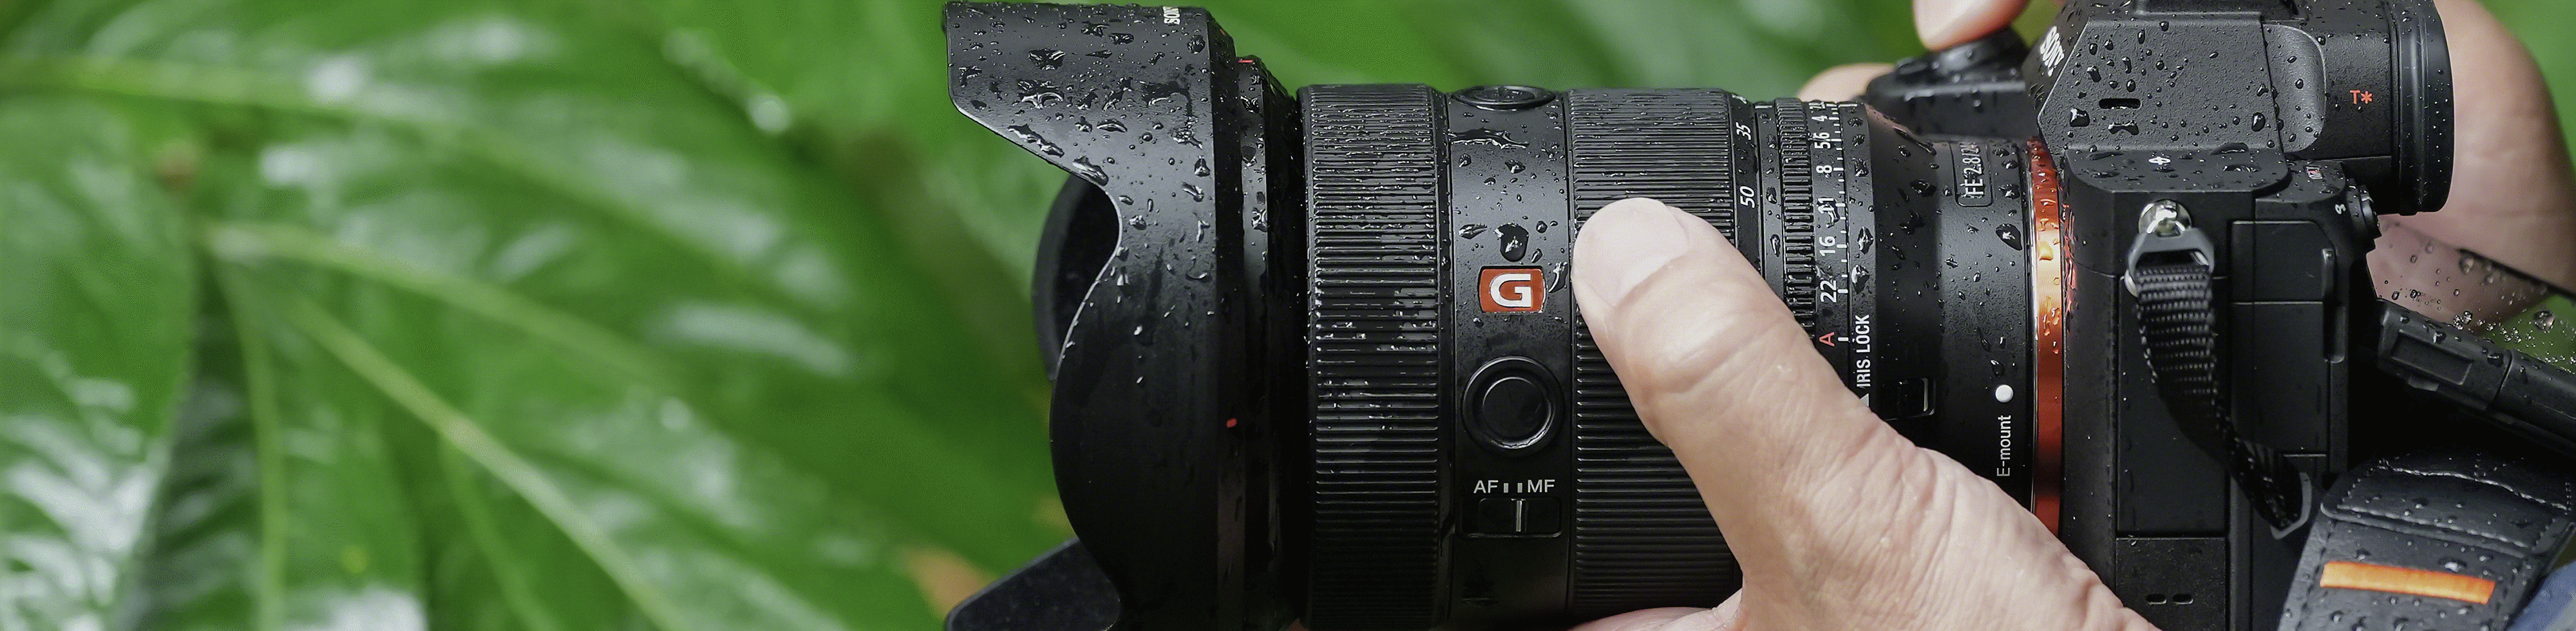 Hình ảnh một người đang cầm α7R V khi bề mặt máy bị ướt